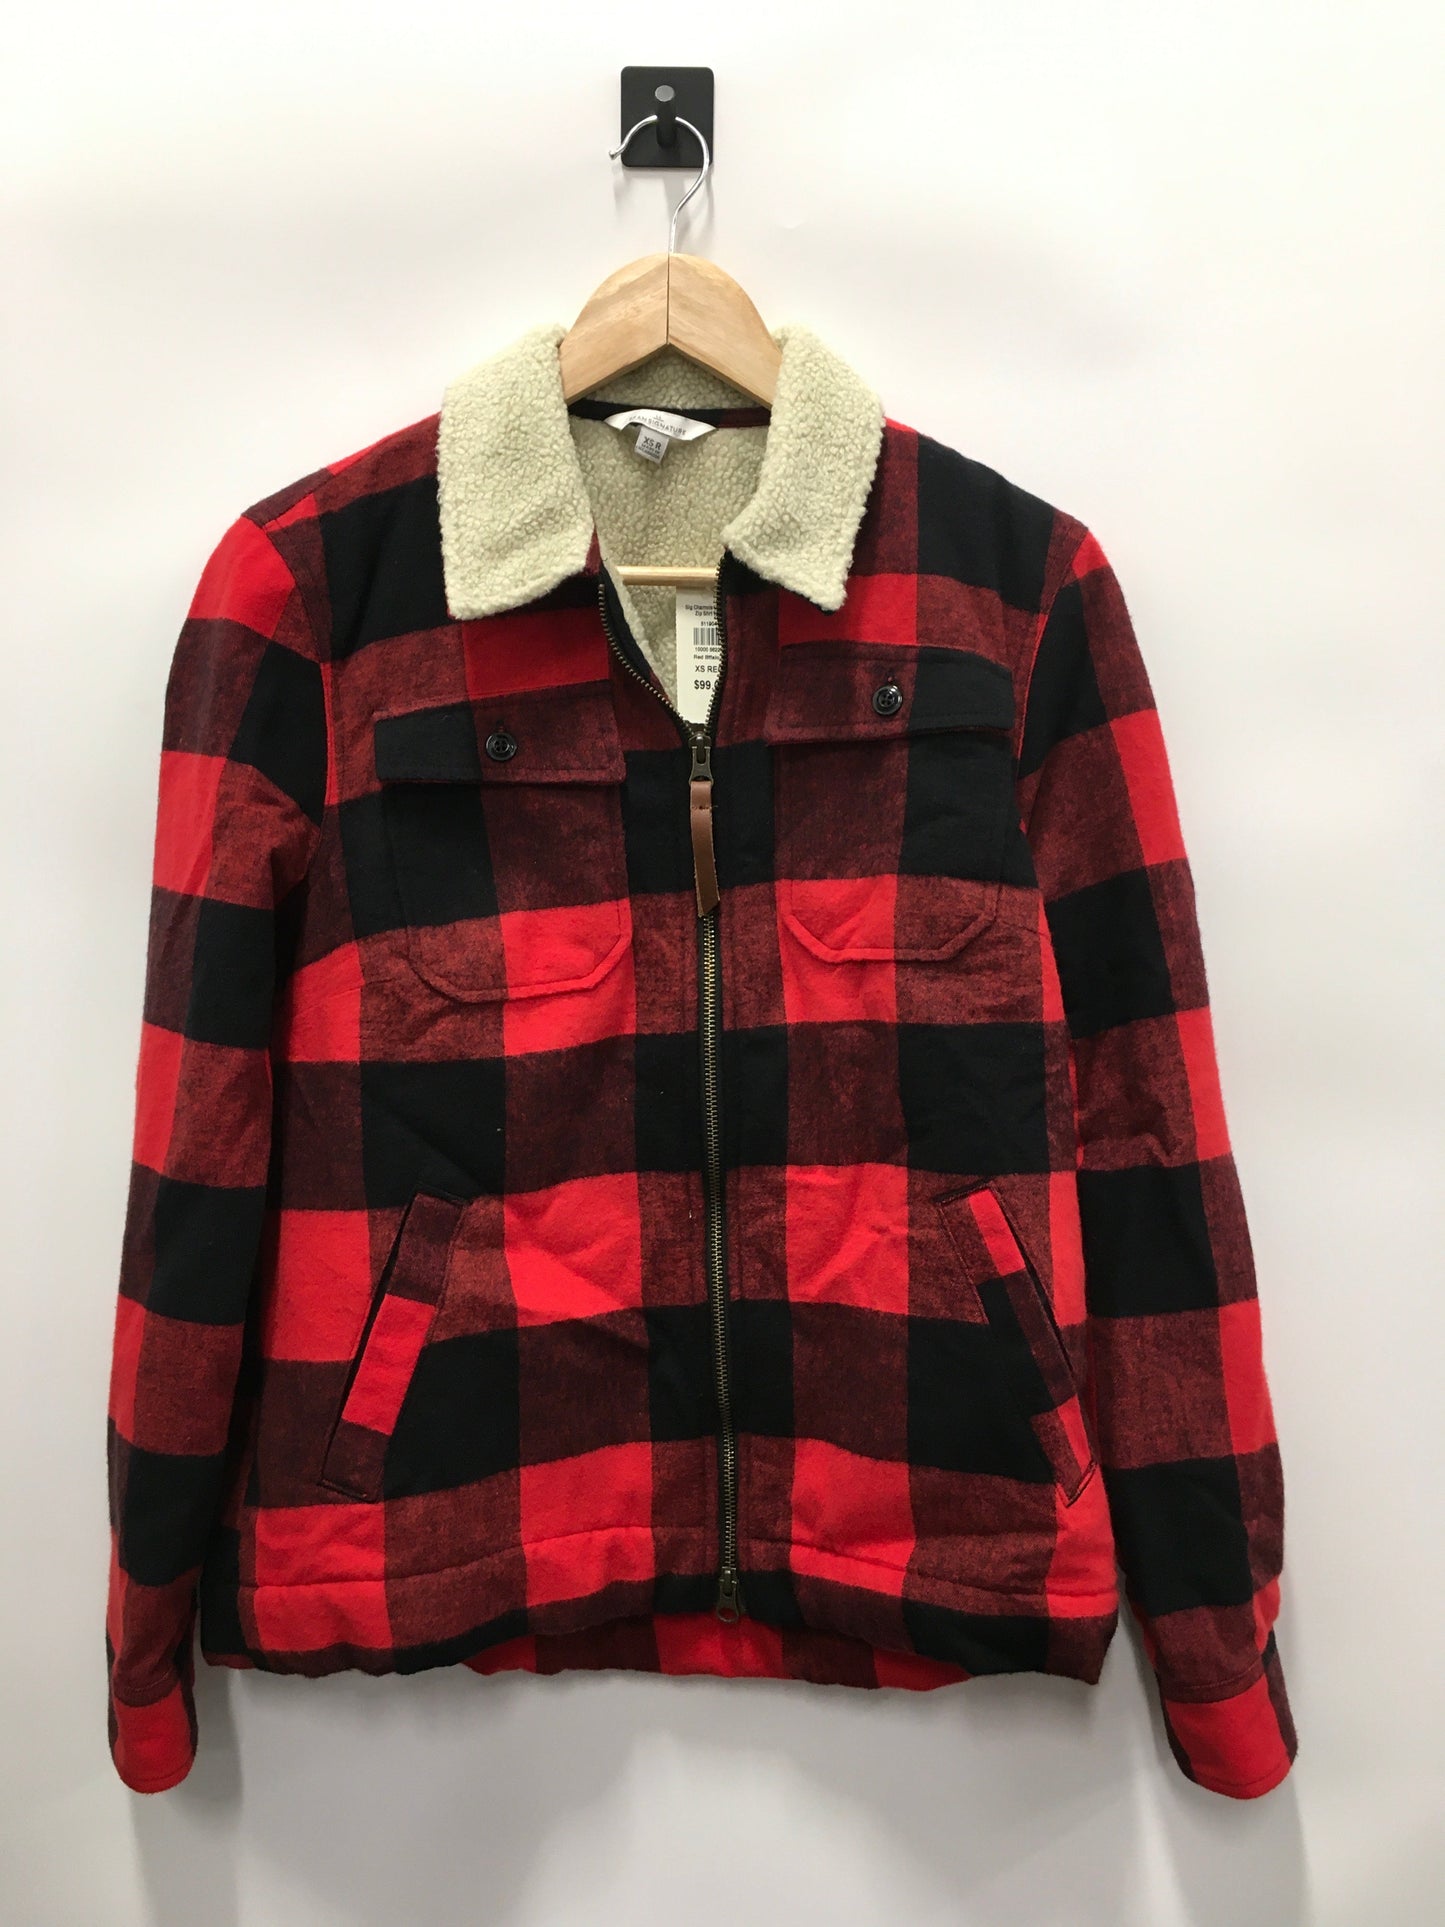 Plaid Pattern Jacket Fleece L.l. Bean, Size Xs